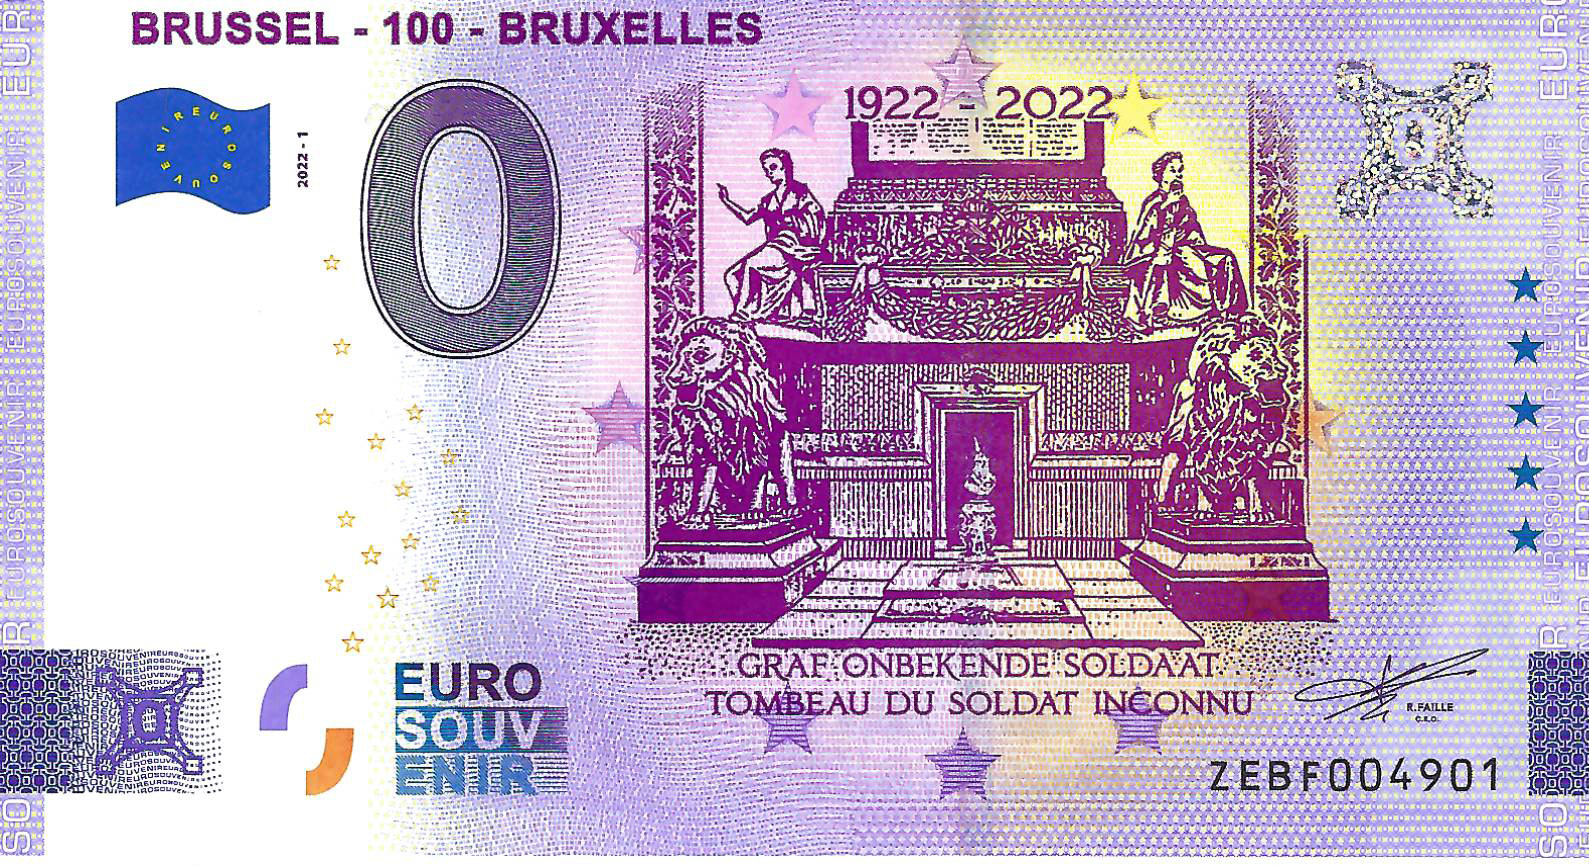 0 Euro biljet België 2022 - Brussel Graf onbekende soldaat